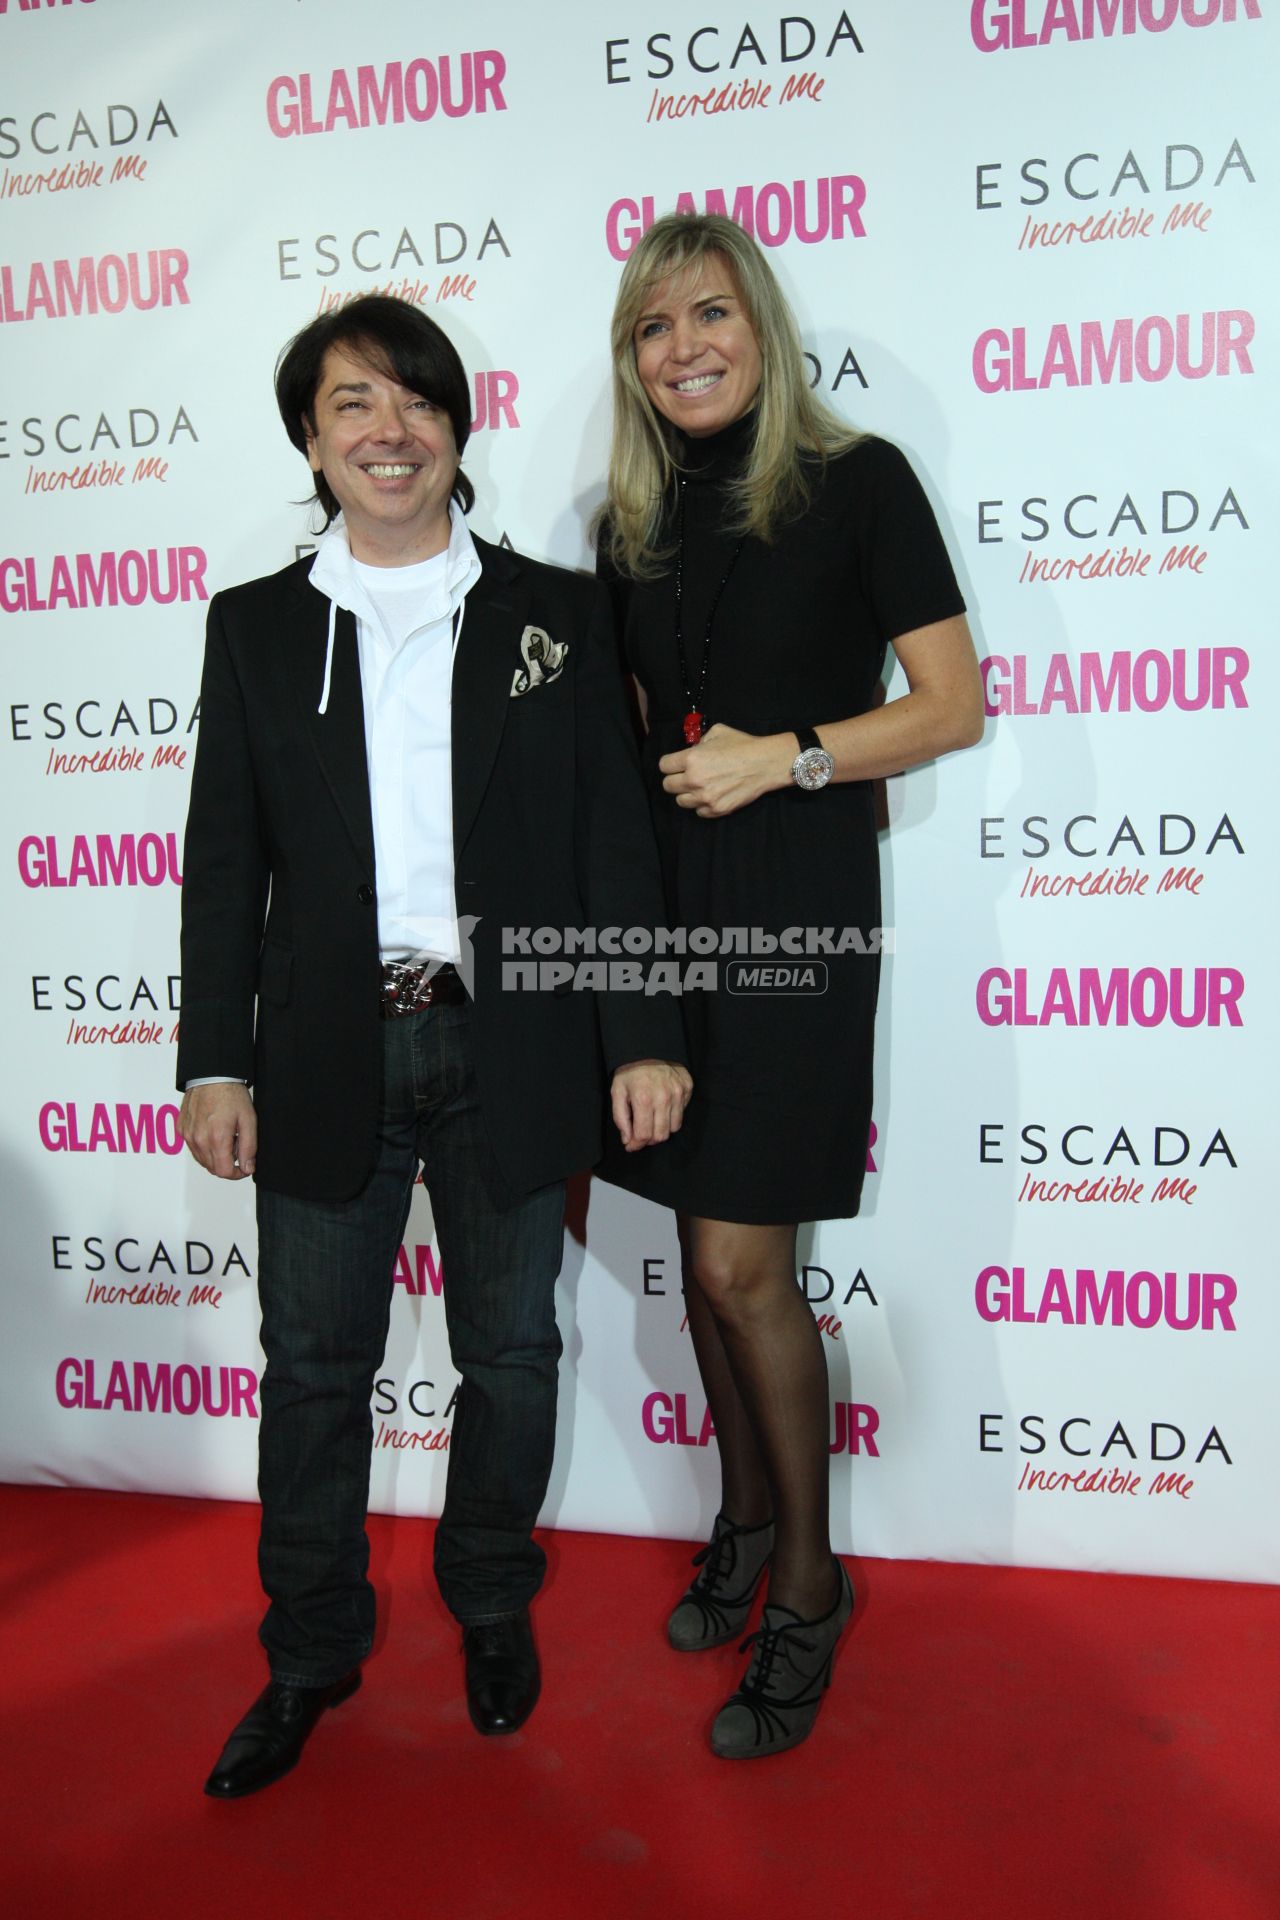 Ежегодная премия `Женщина года 2008` Glamour в гостинице `Метрополь`. На снимке:  модельер Валентин Юдашкин и его супруга Марина.